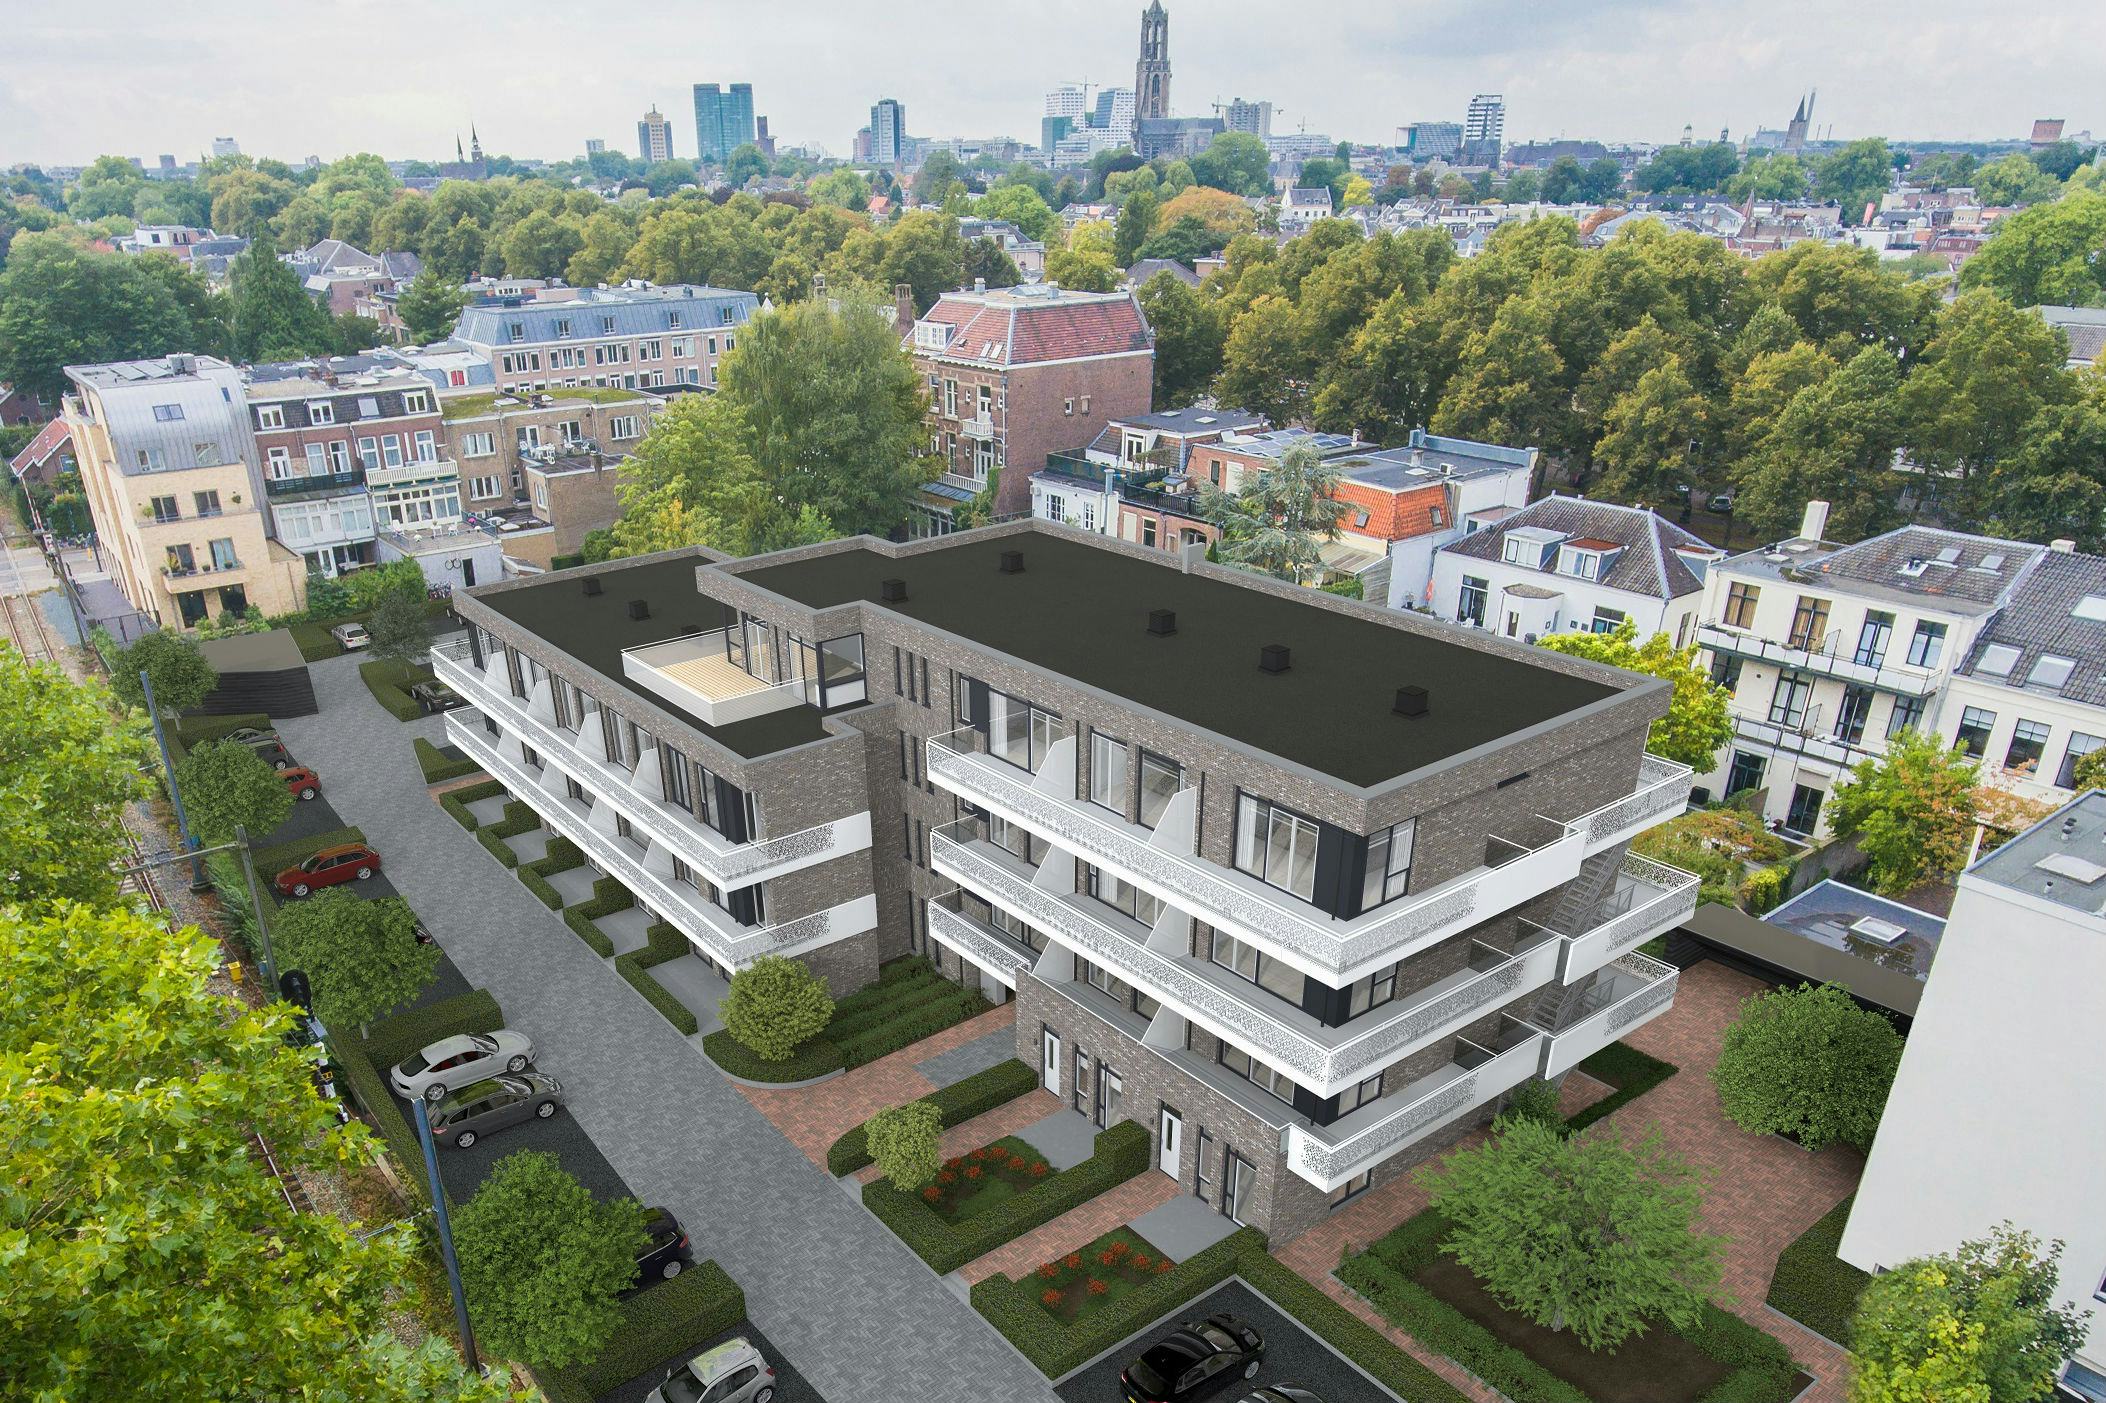 Bridges Real Estate transformeert Utrechts kantoor naar woningen